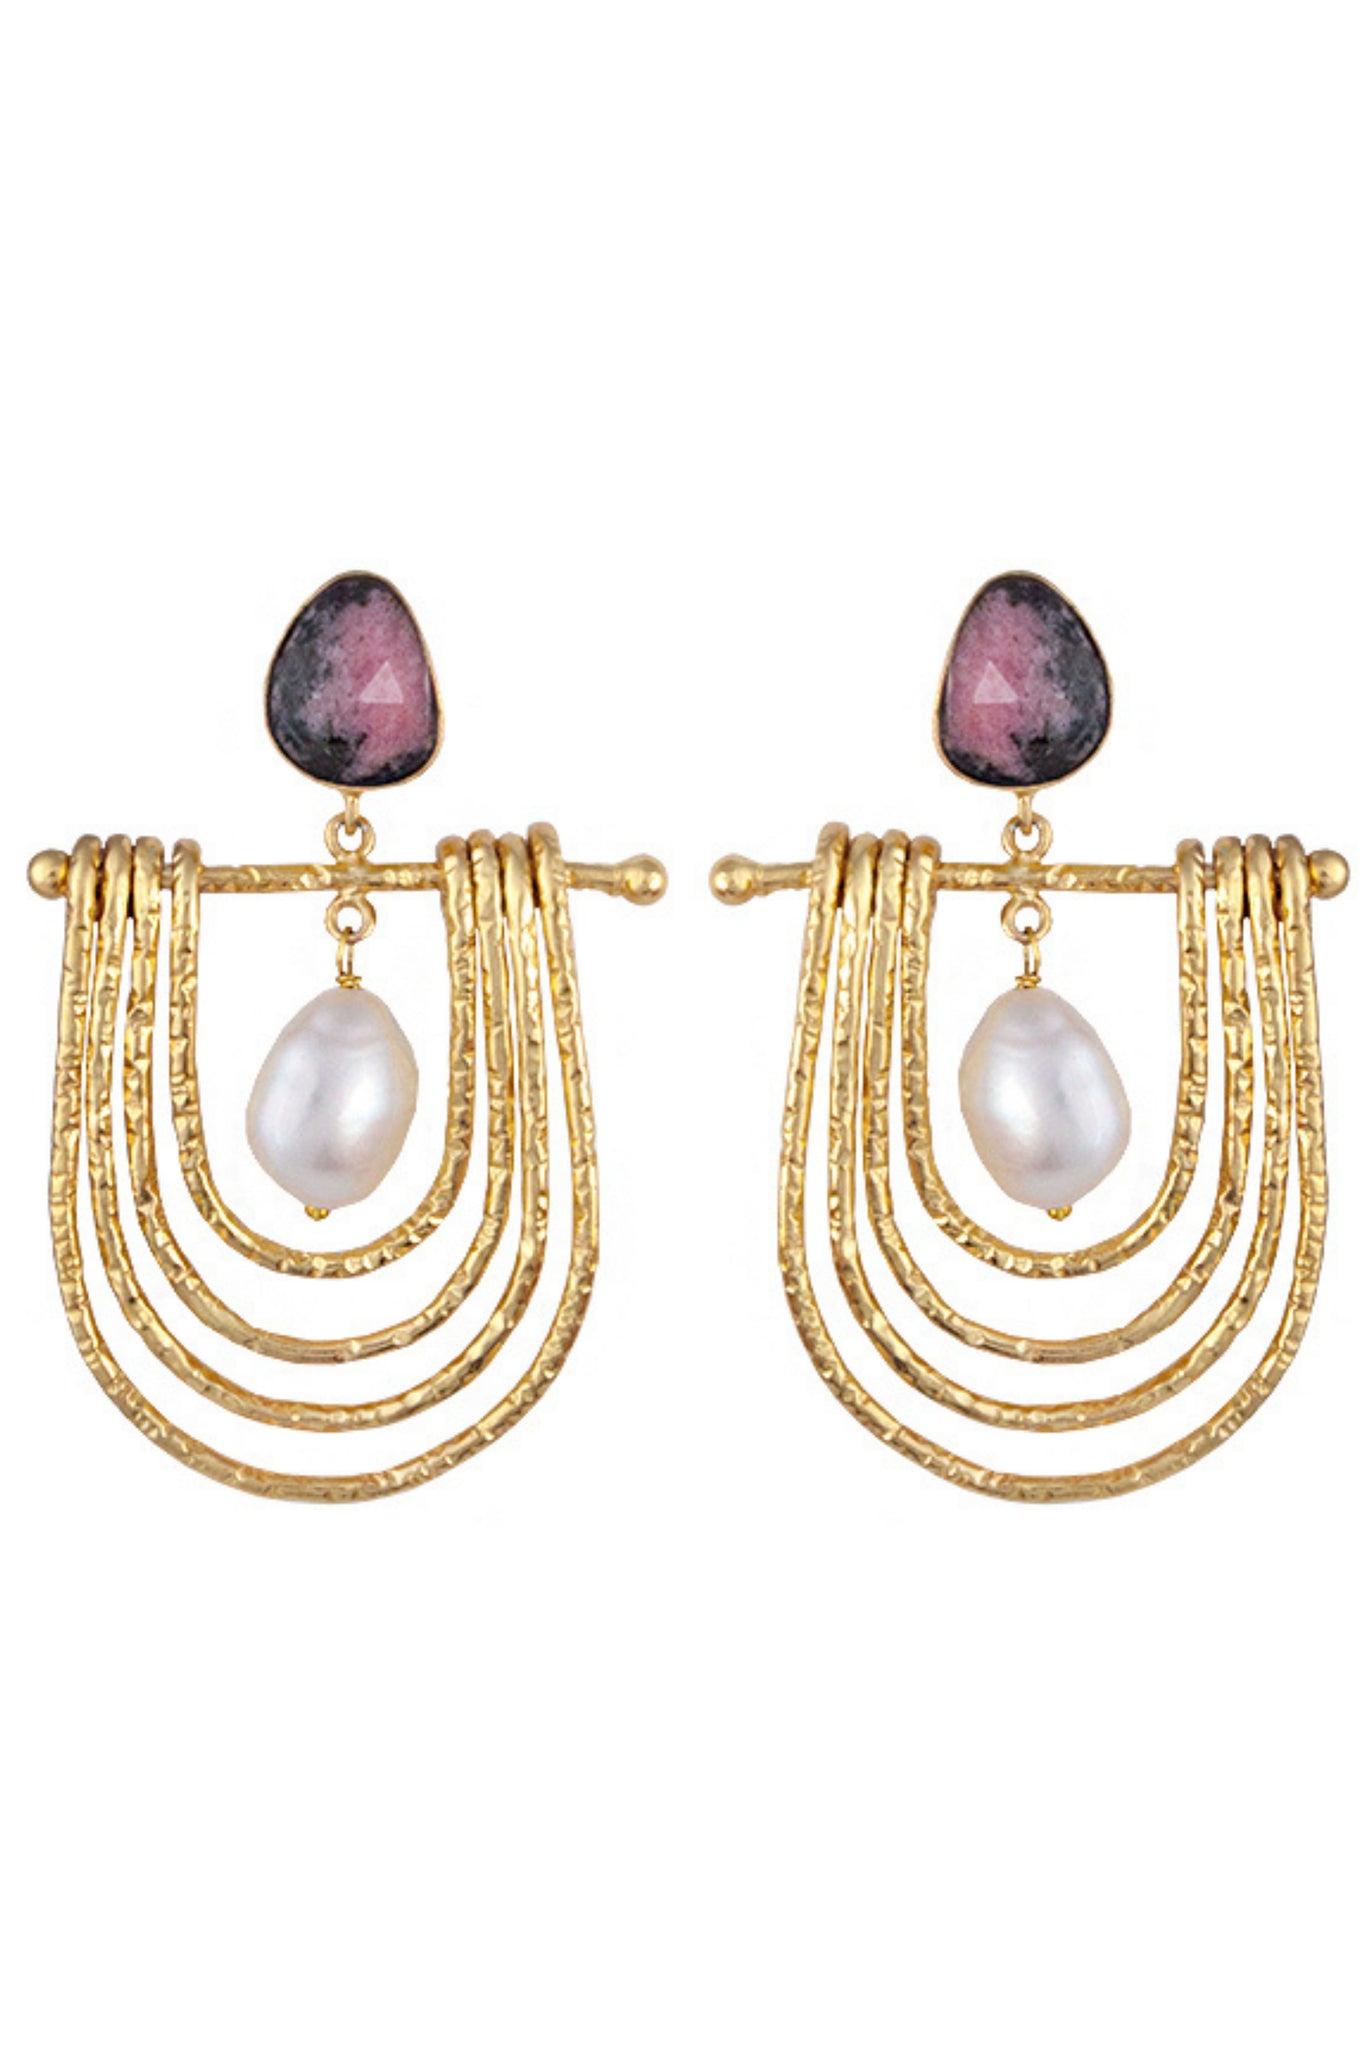 Cleopatra Earrings - Rhodonite and Pearl